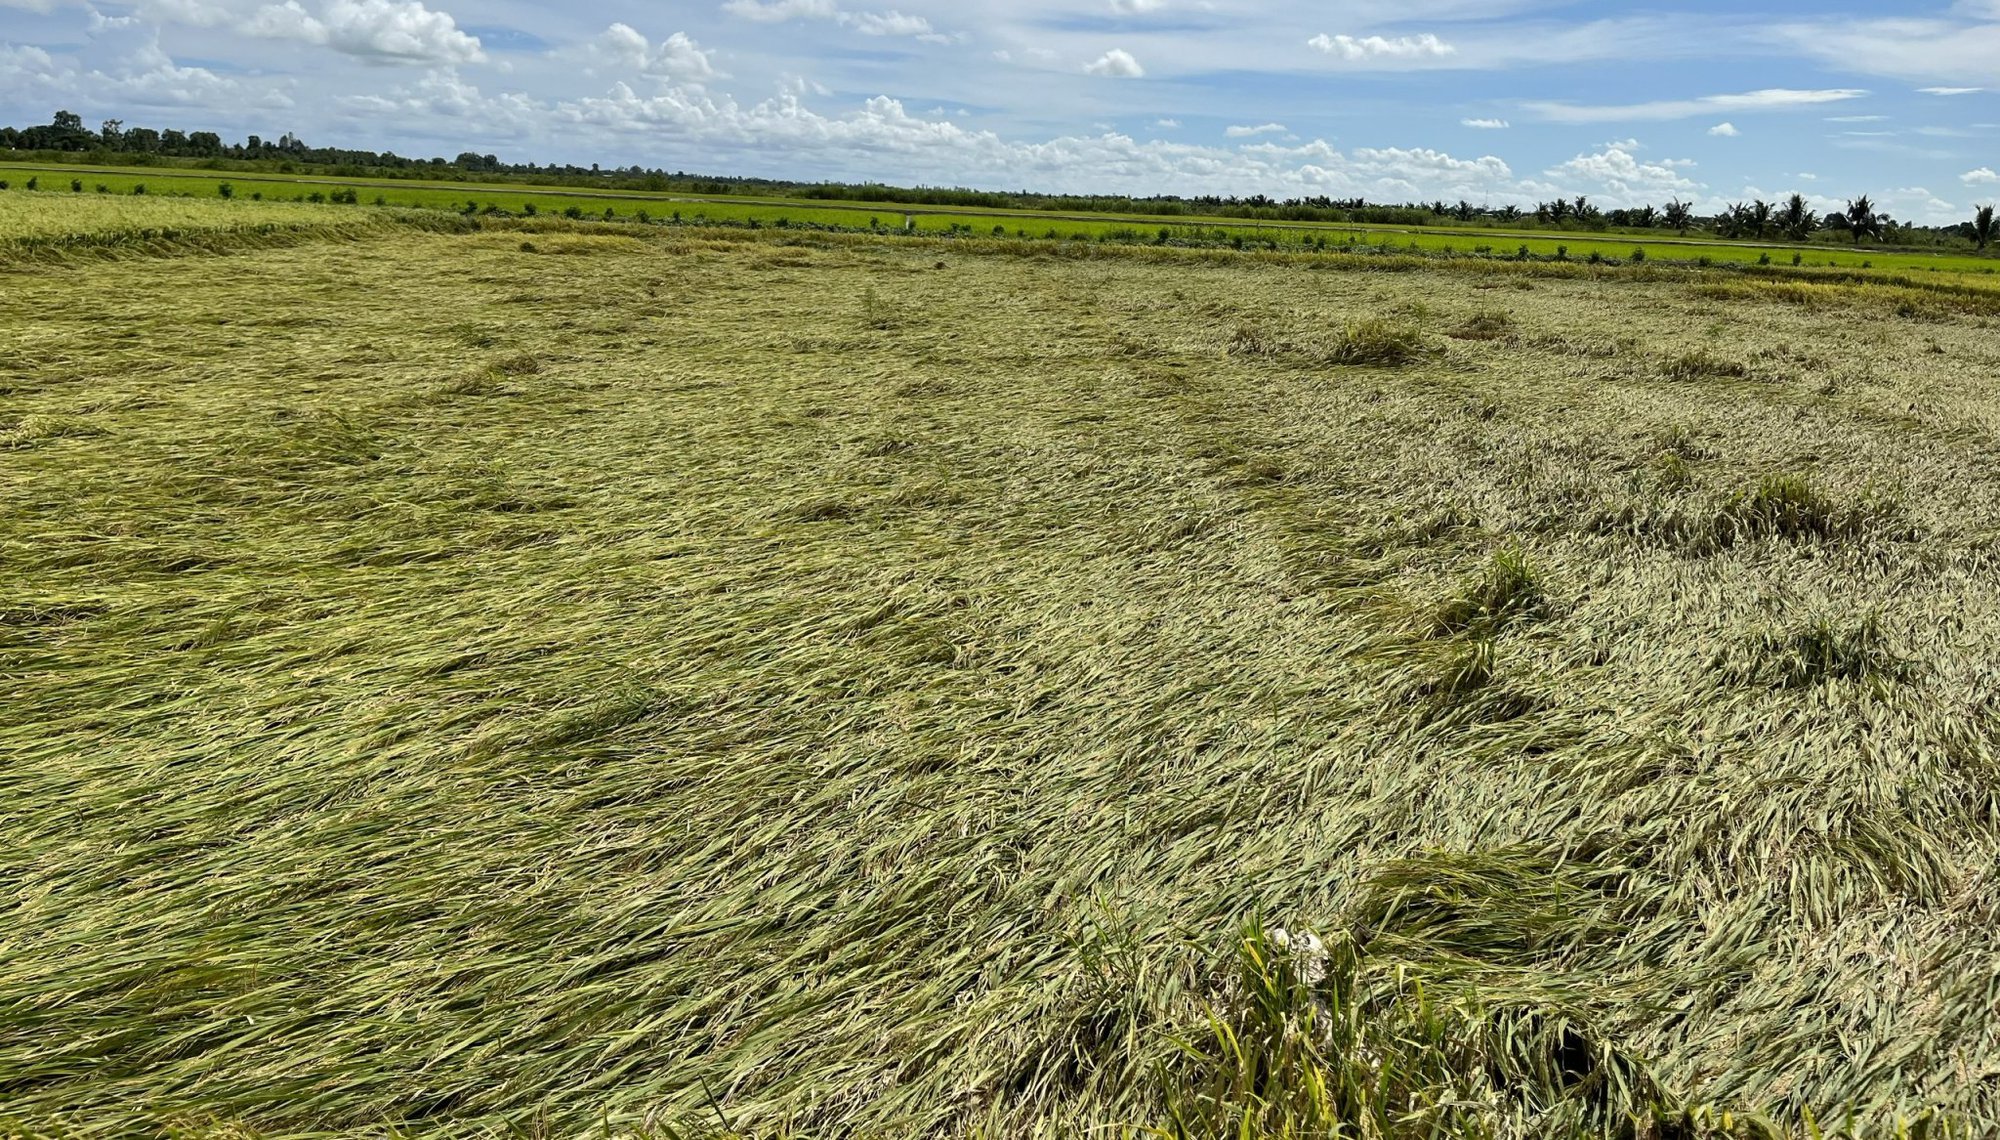 Ứng dụng máy sạ cụm trong giảm giống gieo sạ trên cây lúa tại Đồng bằng Sông Cửu Long - Ảnh 6.